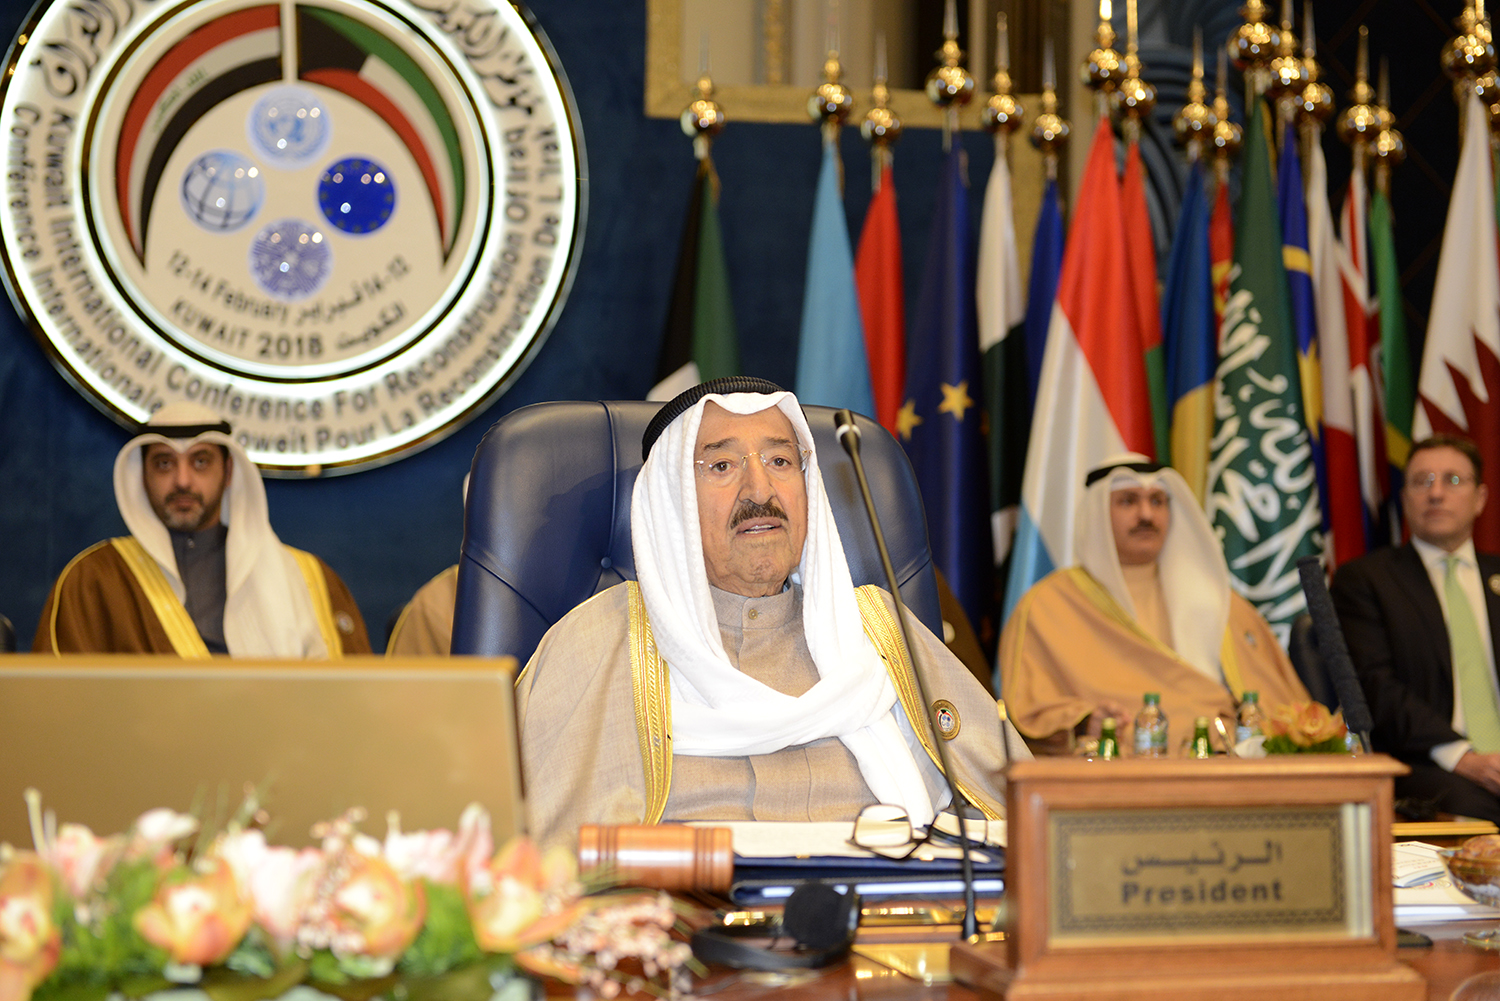 الأمير الراحل الشيخ صباح الأحمد الجابر الصباح يفتتح مؤتمر الكويت الدولي لإعادة إعمار العراق